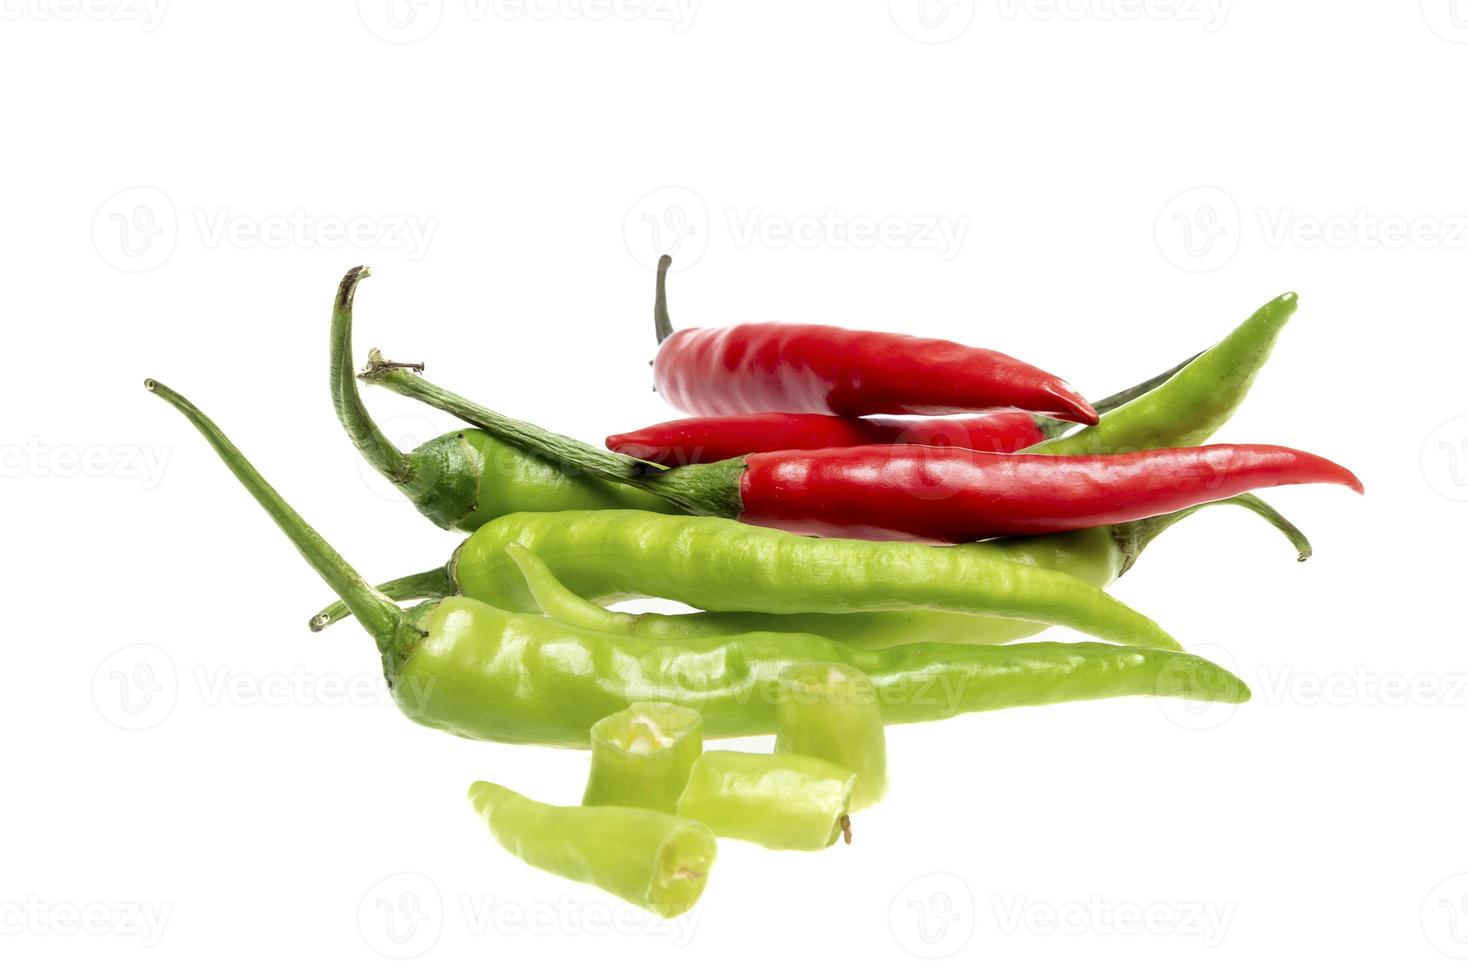 grön chili peppar isolerat på vit foto